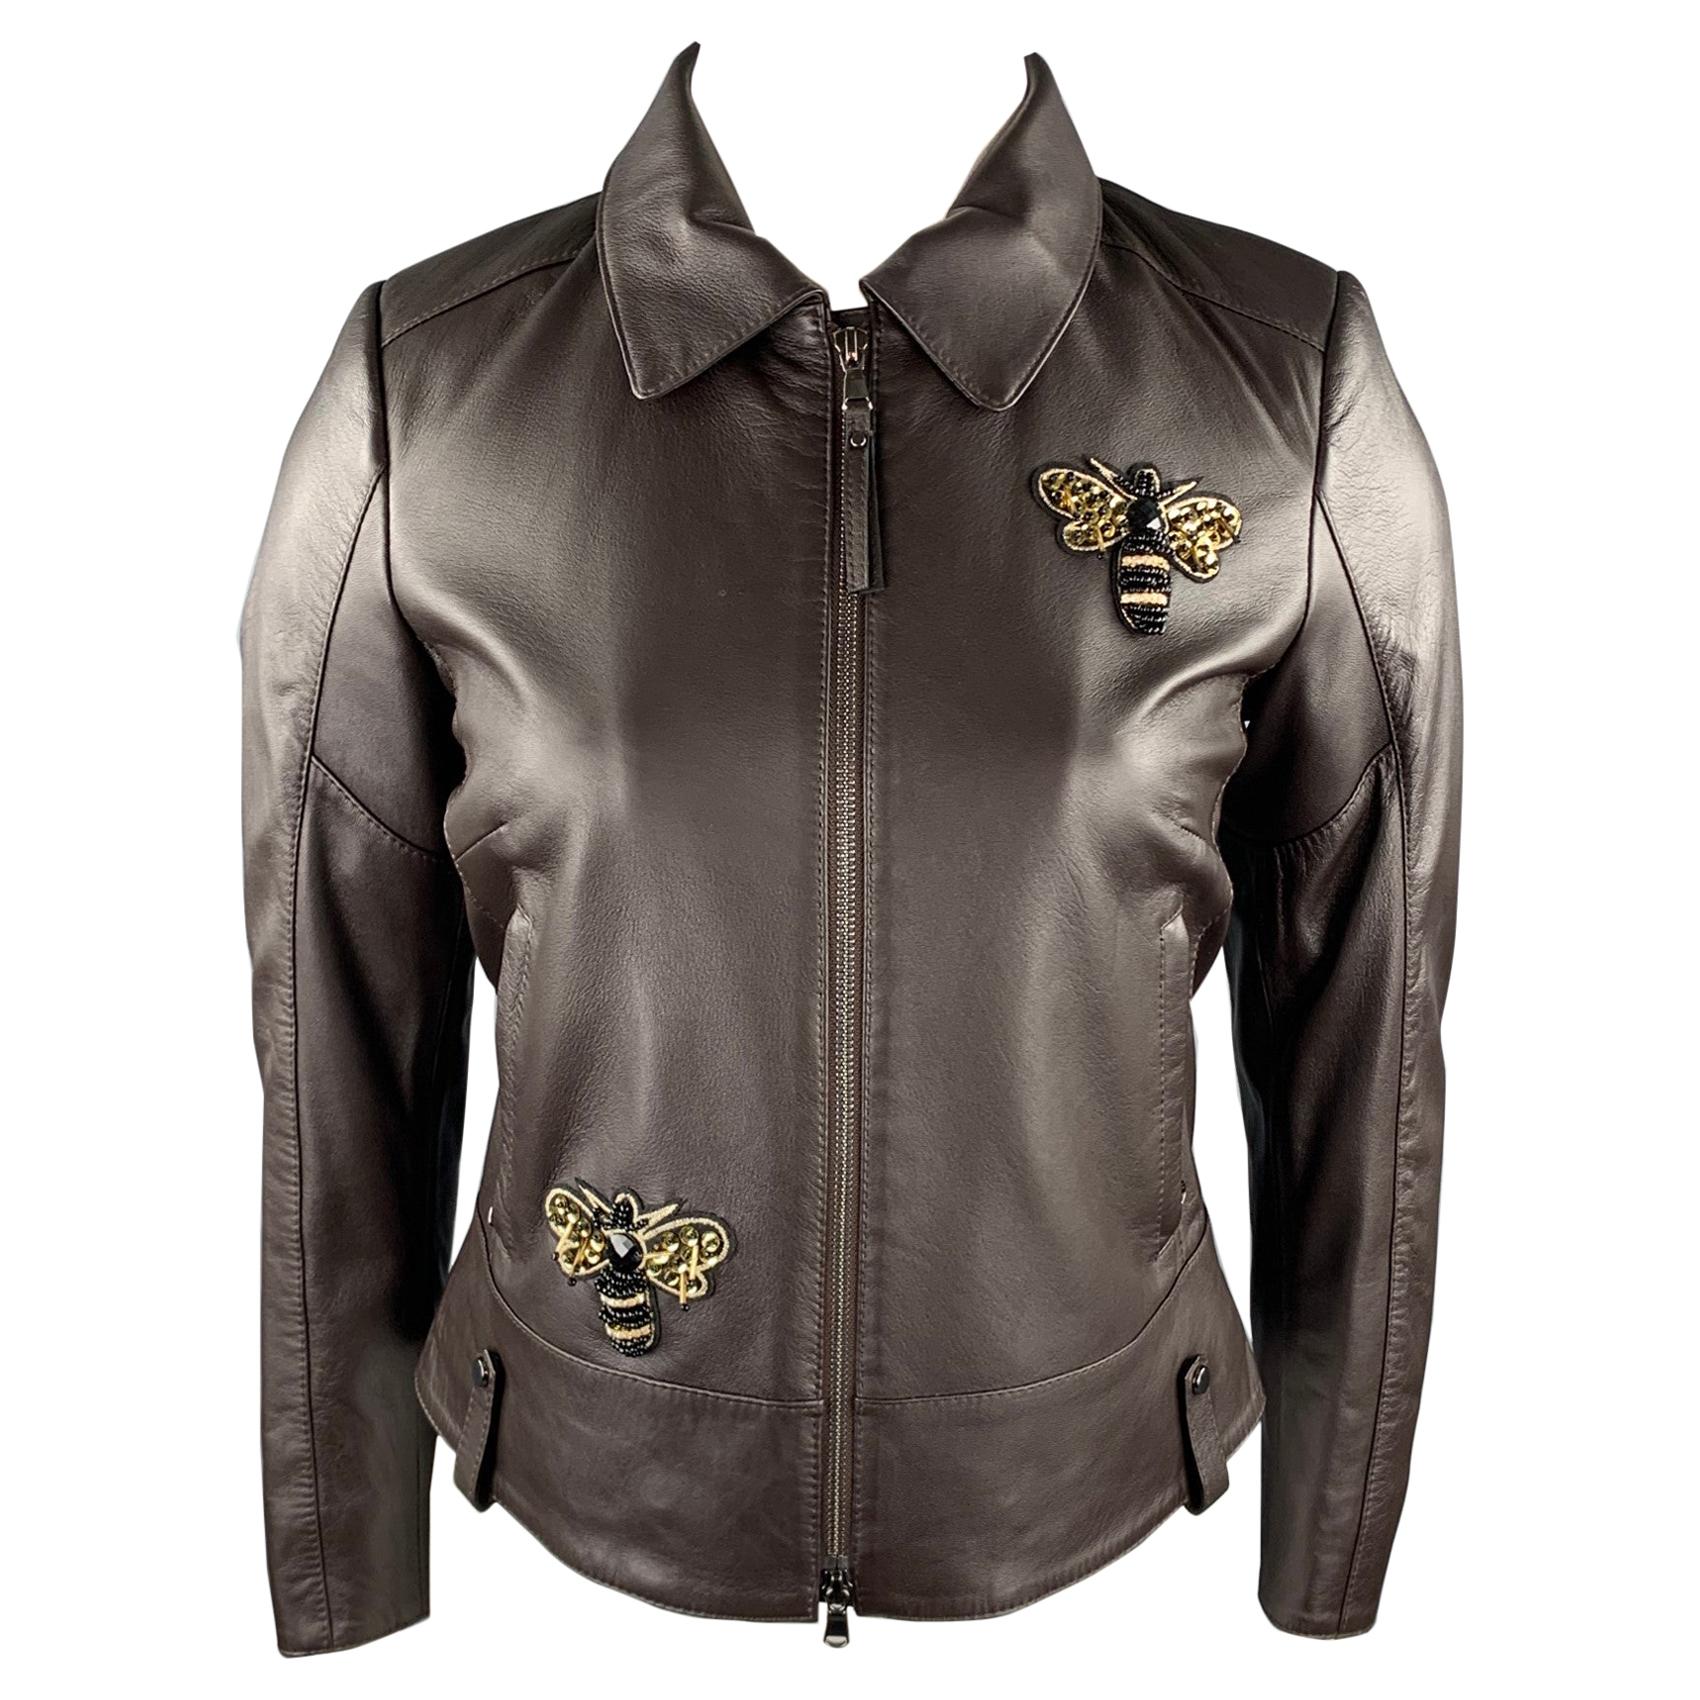 Prada Women's Jacket EU Size 42 (USA 6). NWT navy. $1230 Retail. Stunning